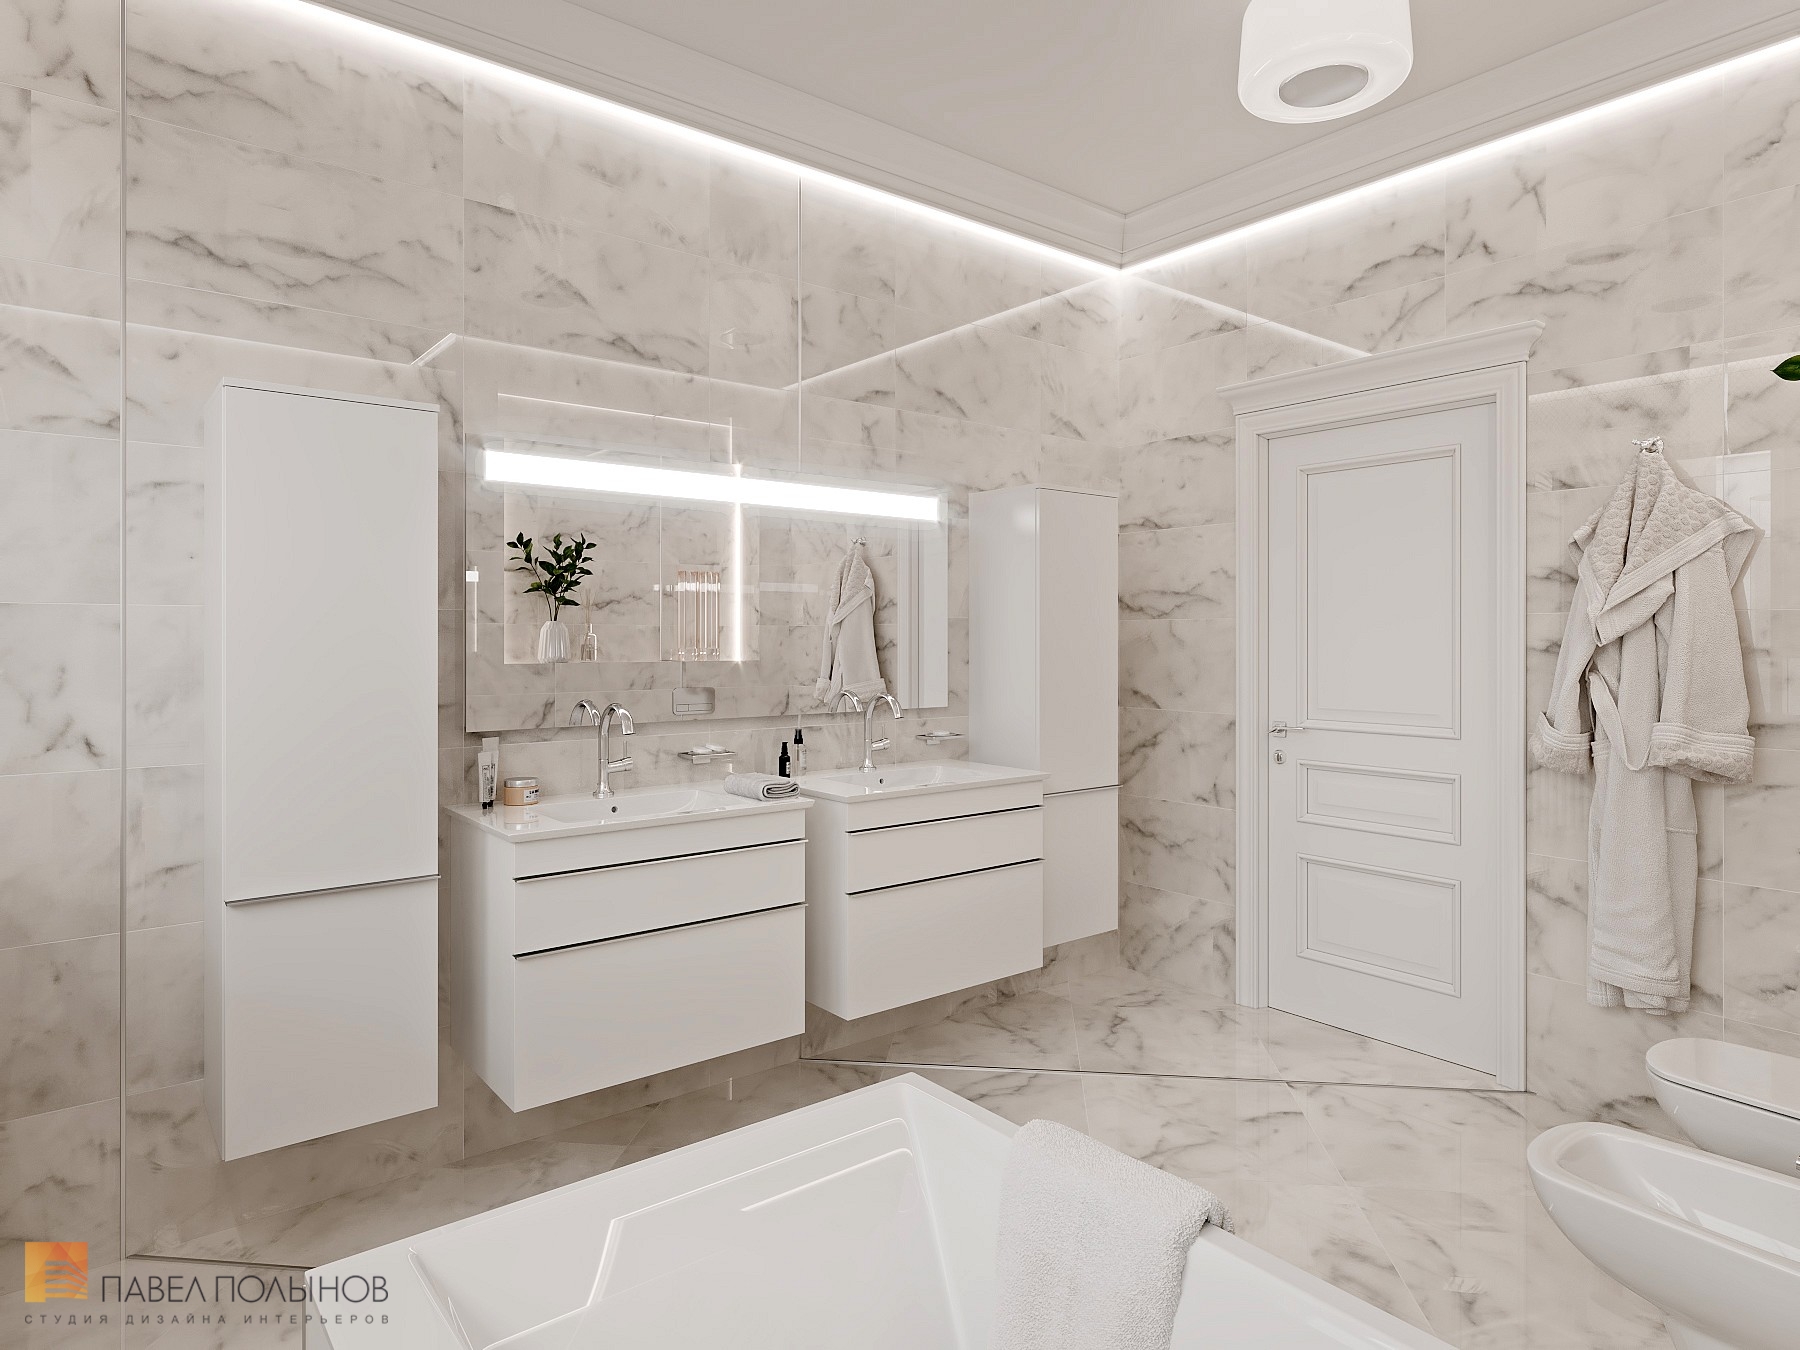 Фото дизайн ванной комнаты из проекта «Интерьер квартиры 200 кв.м. в стиле Ар-деко, ЖК «Граф Орлов»»